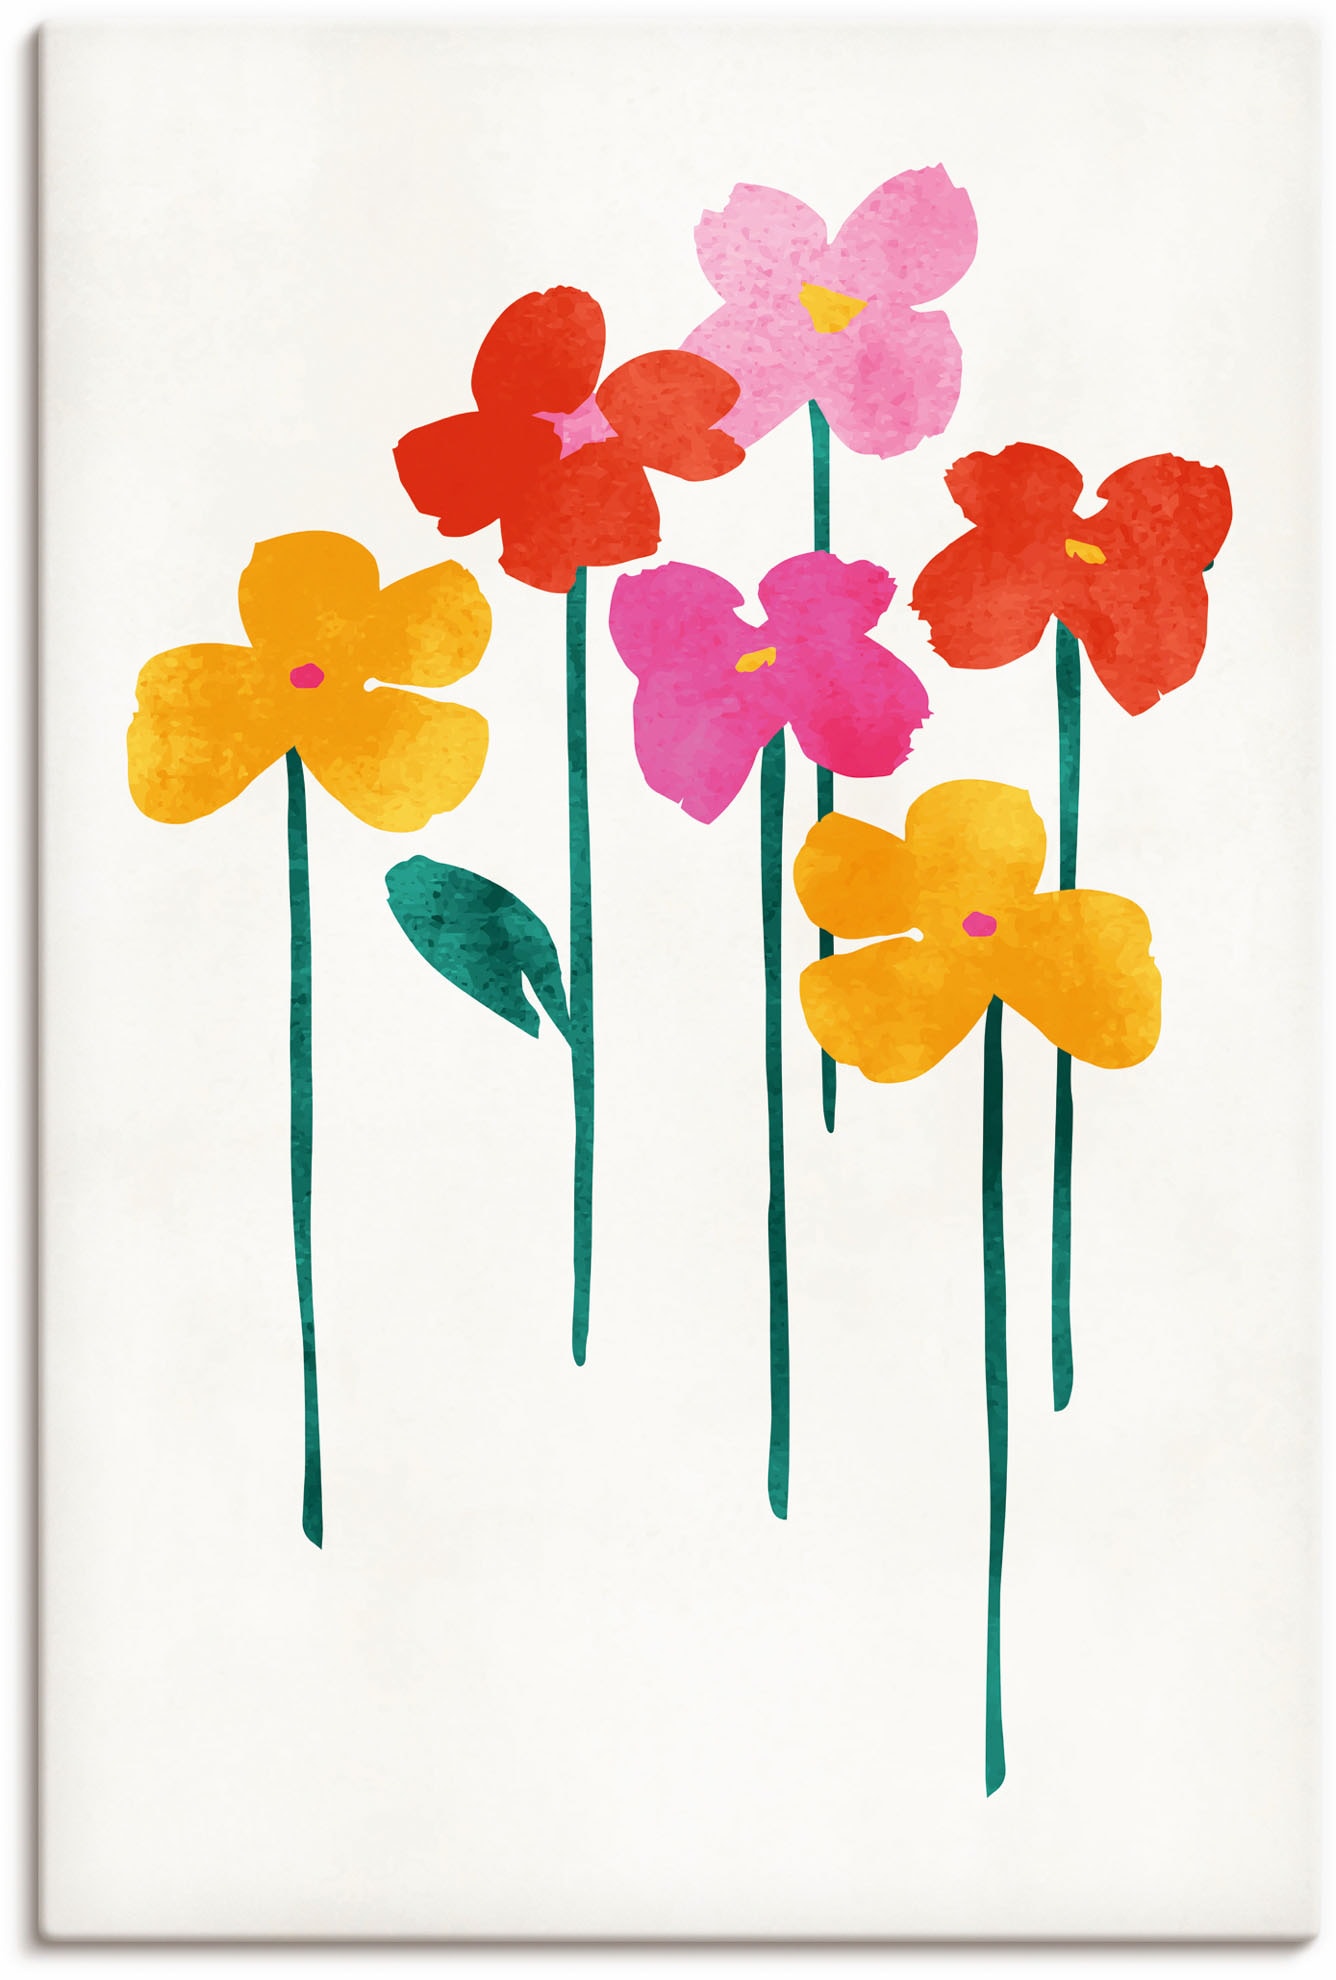 Artland Paveikslas »Kleine glückliche Blumen« ...